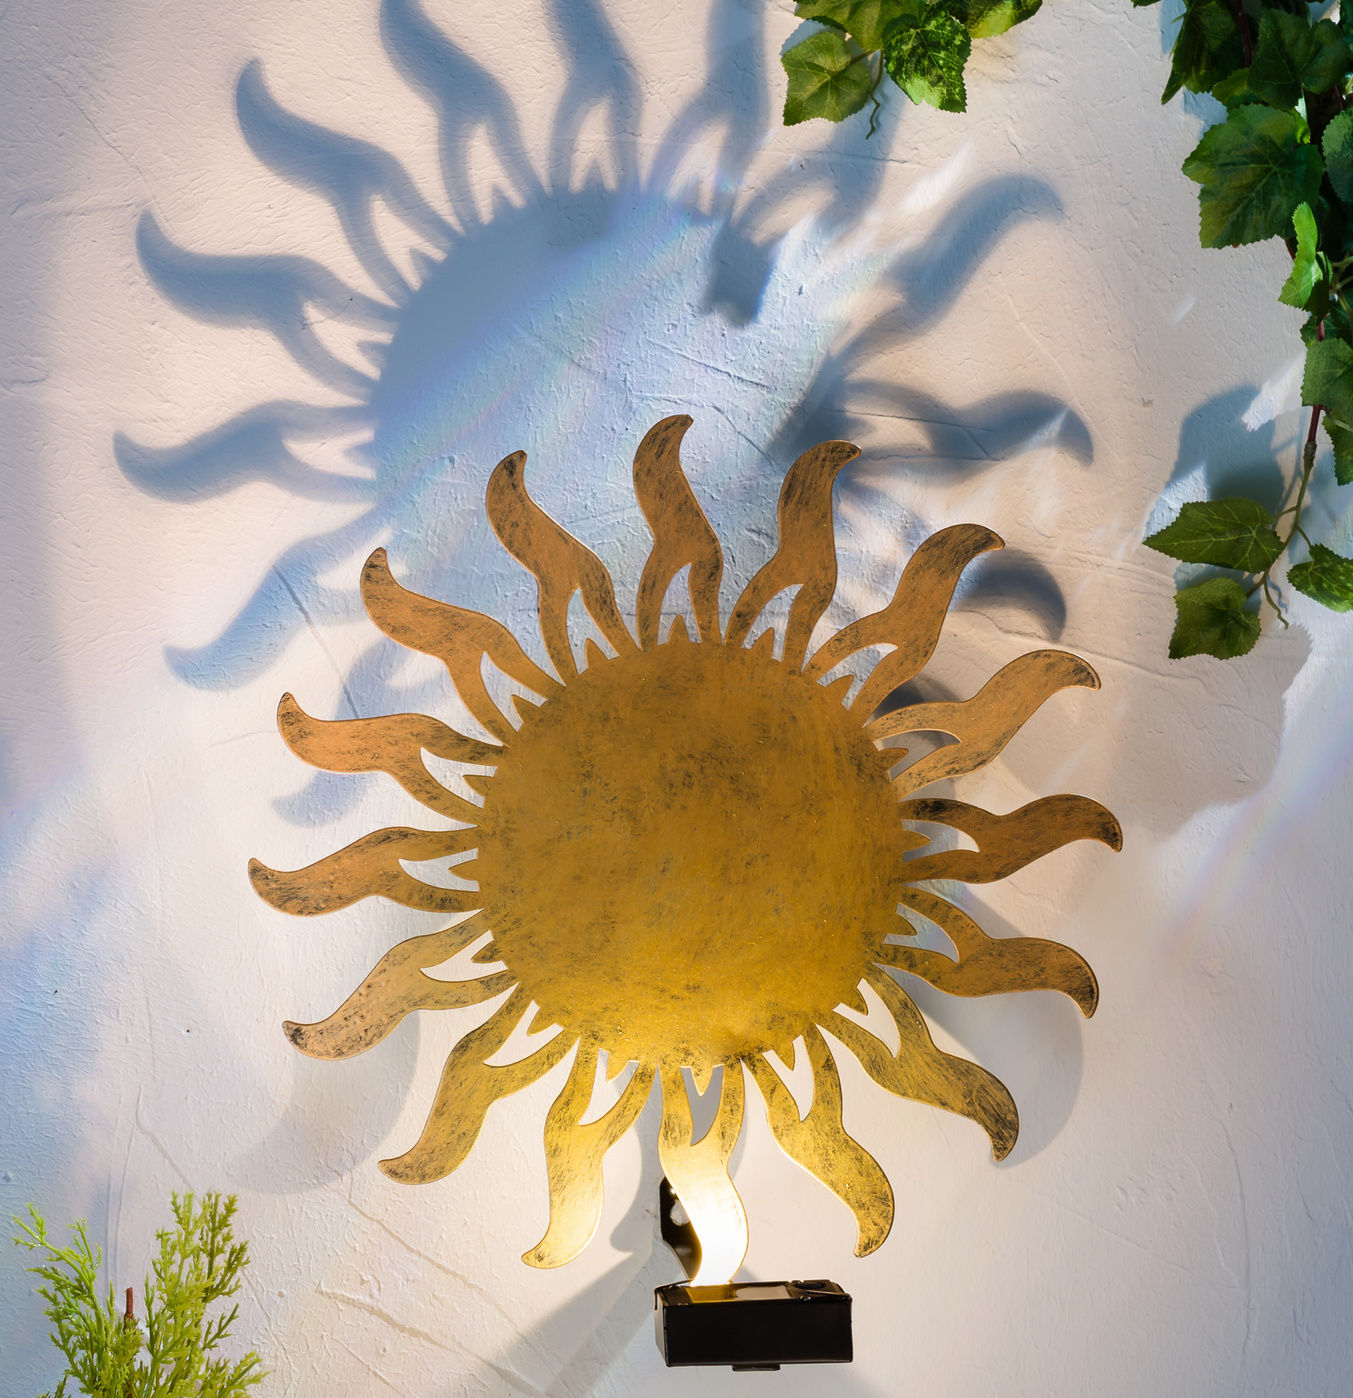 Solar Wandleuchte Sonne im antik bronze Look - Ø 30 cm - LED Garten Deko Wand Beleuchtung